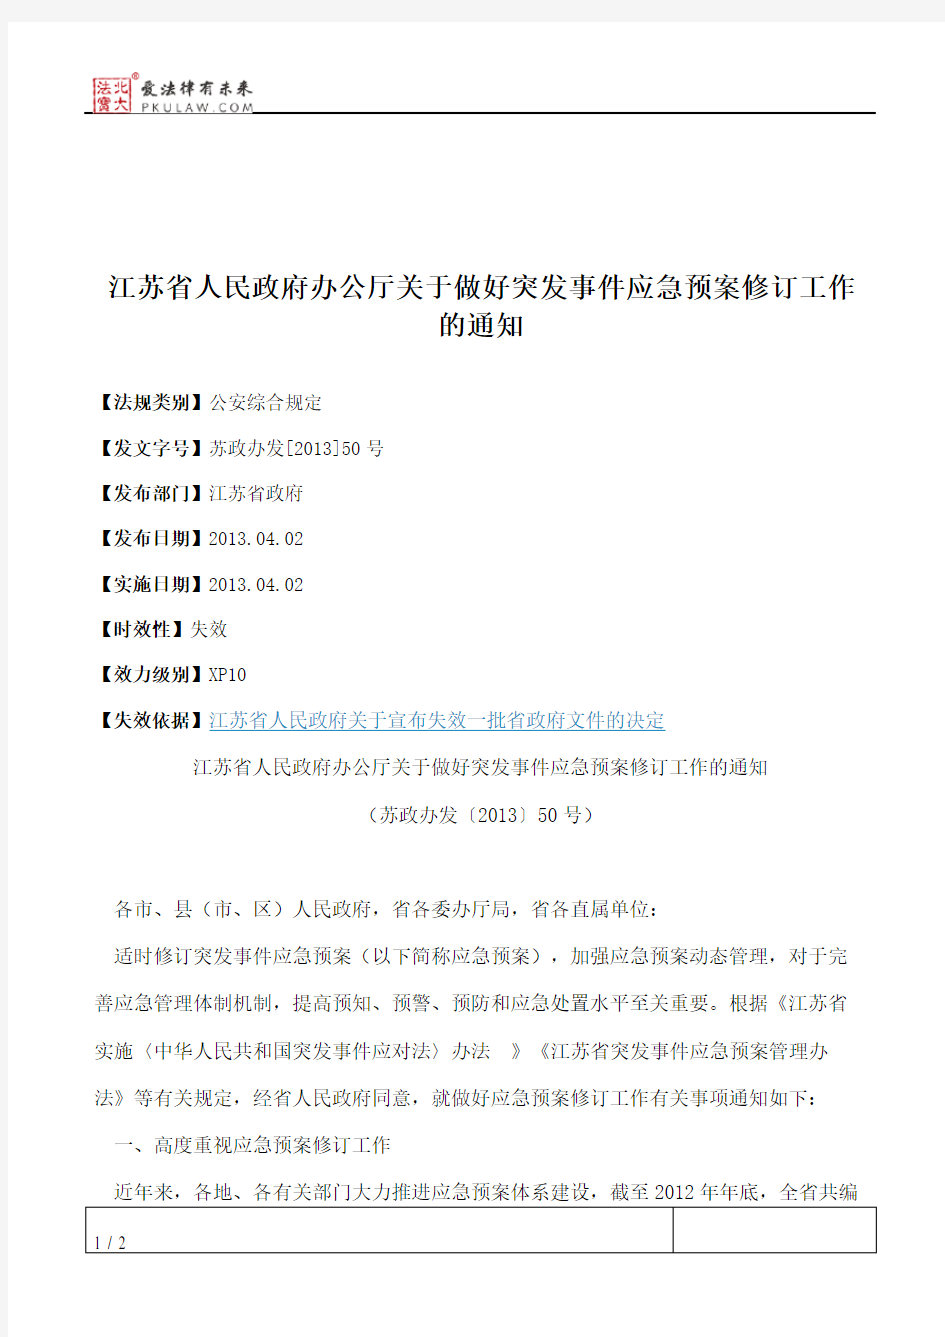 江苏省人民政府办公厅关于做好突发事件应急预案修订工作的通知